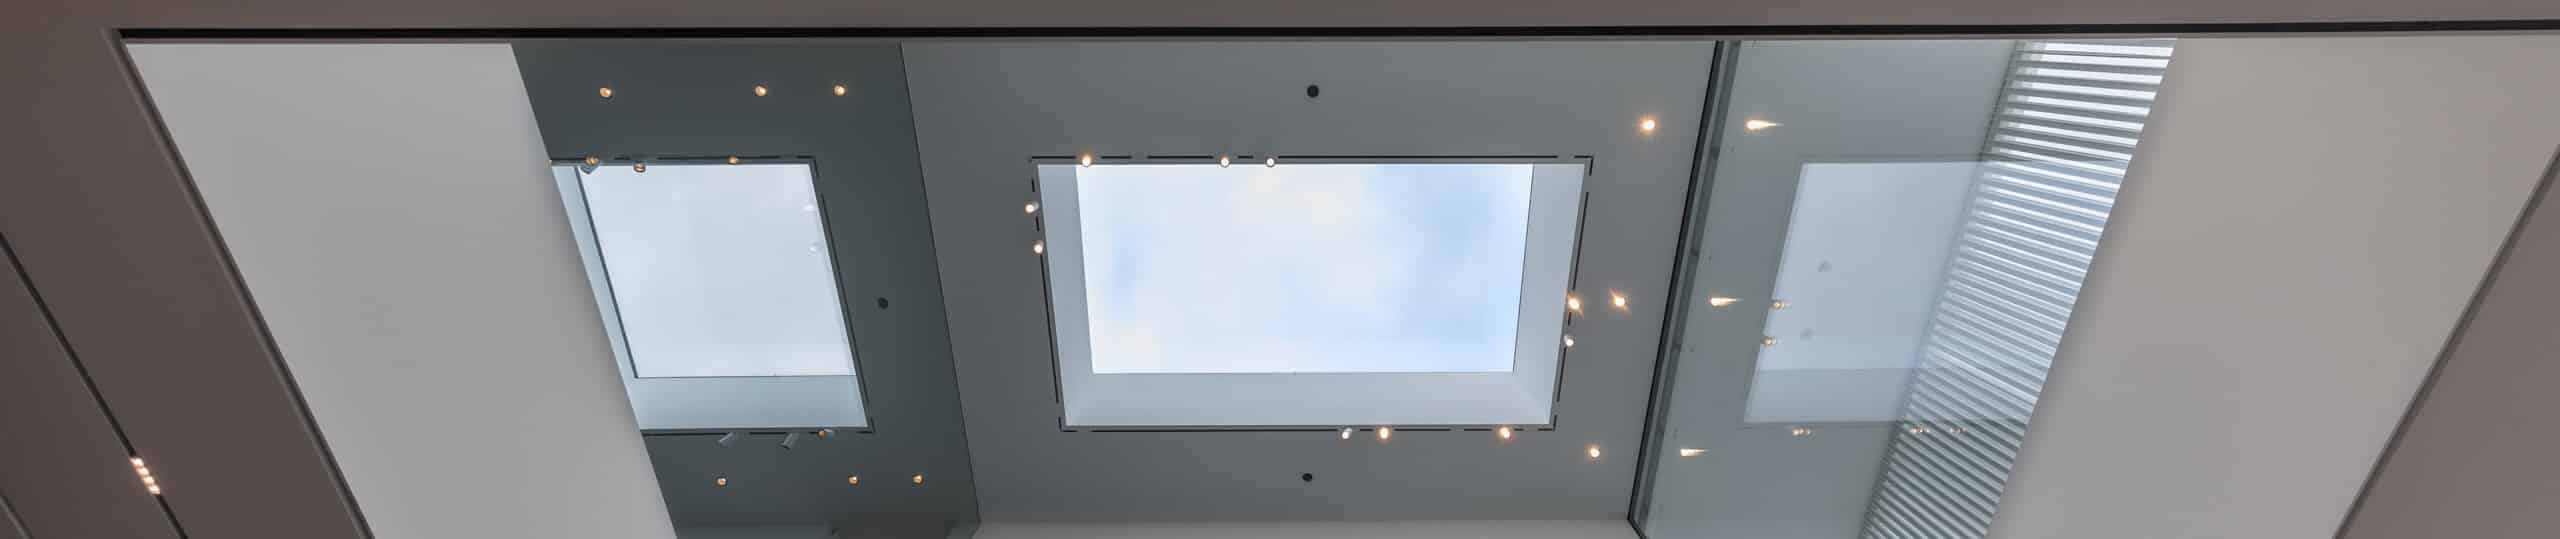 Festverglastes Design-Oberlicht und Flachdachfenster aus Sicht von unten